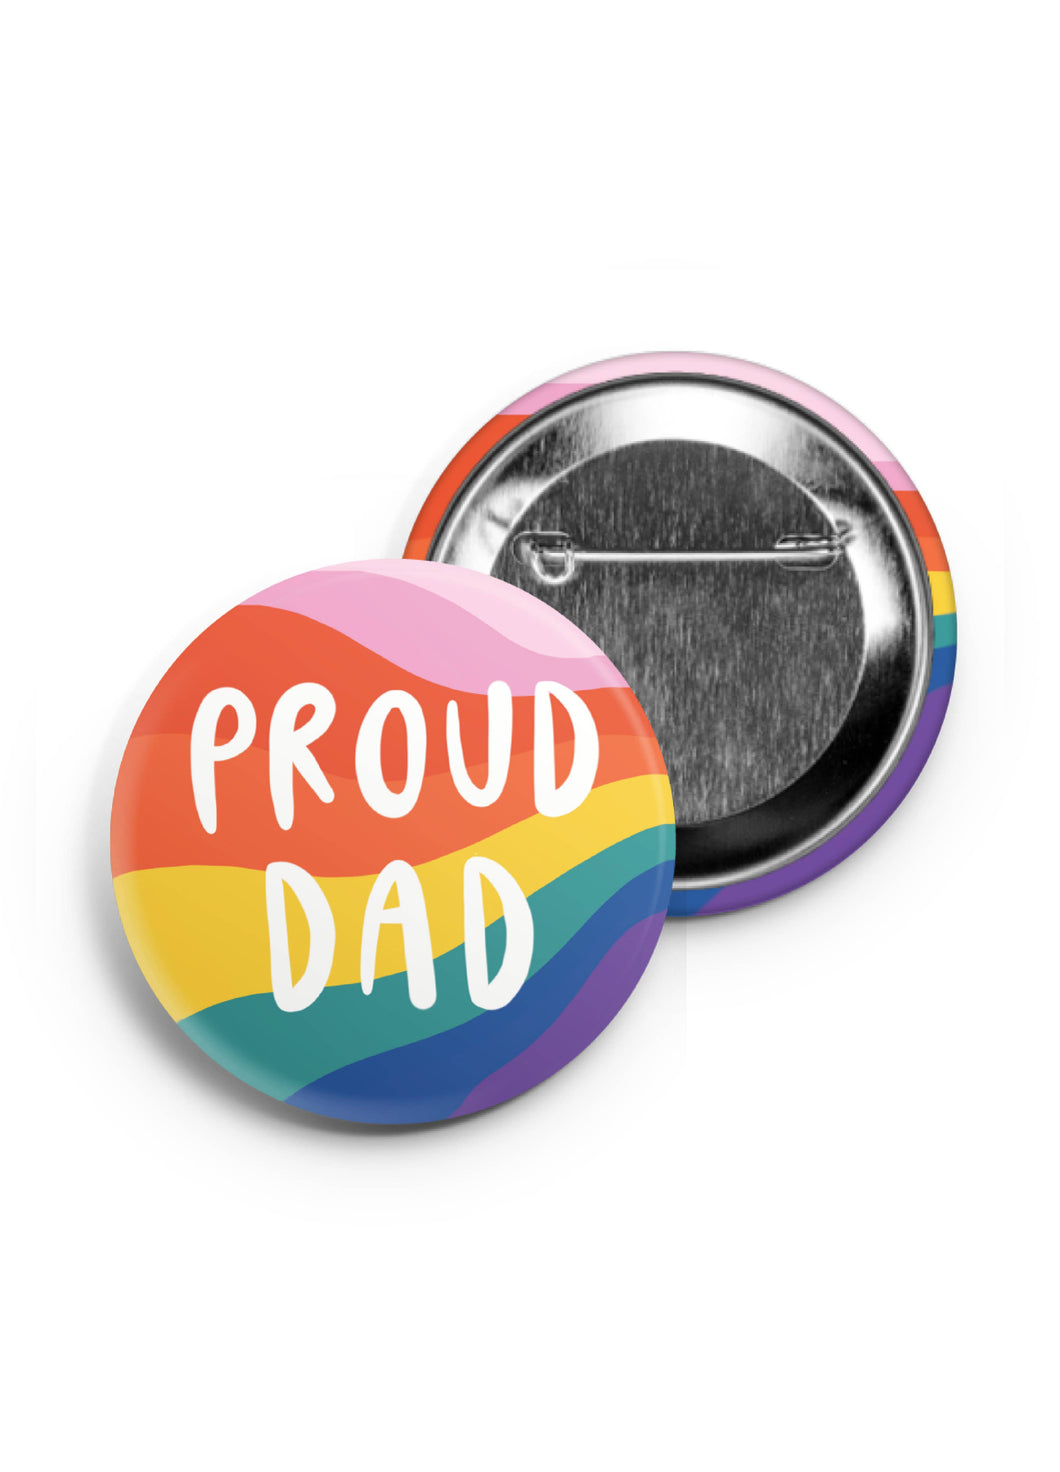 Proud Dad -  LGBTQ